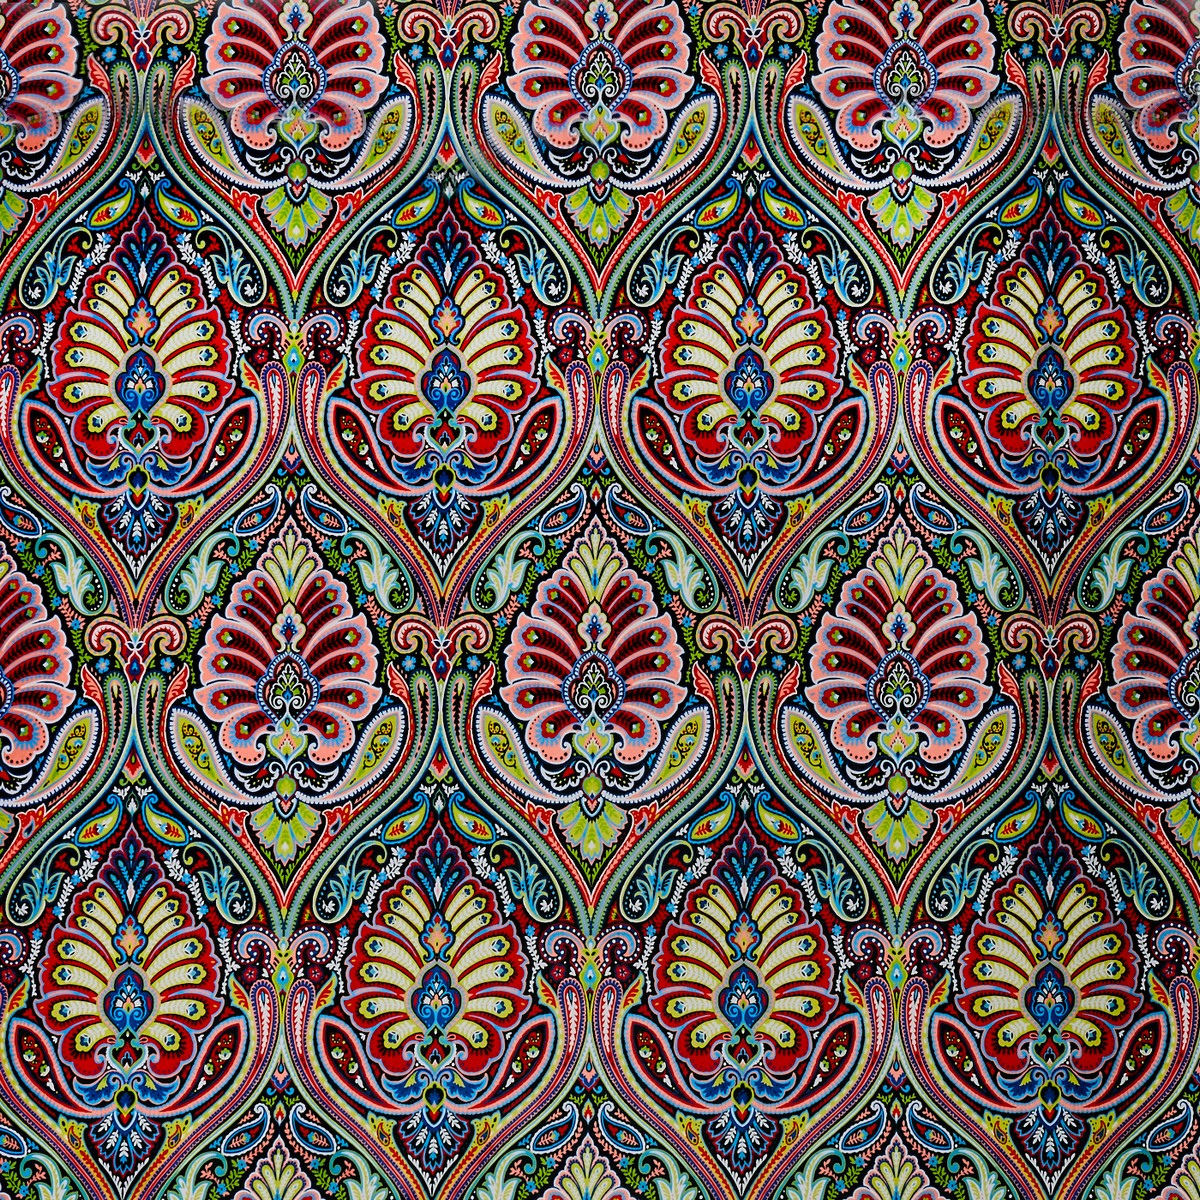 Antigua Carnival Fabric by Prestigious Textiles